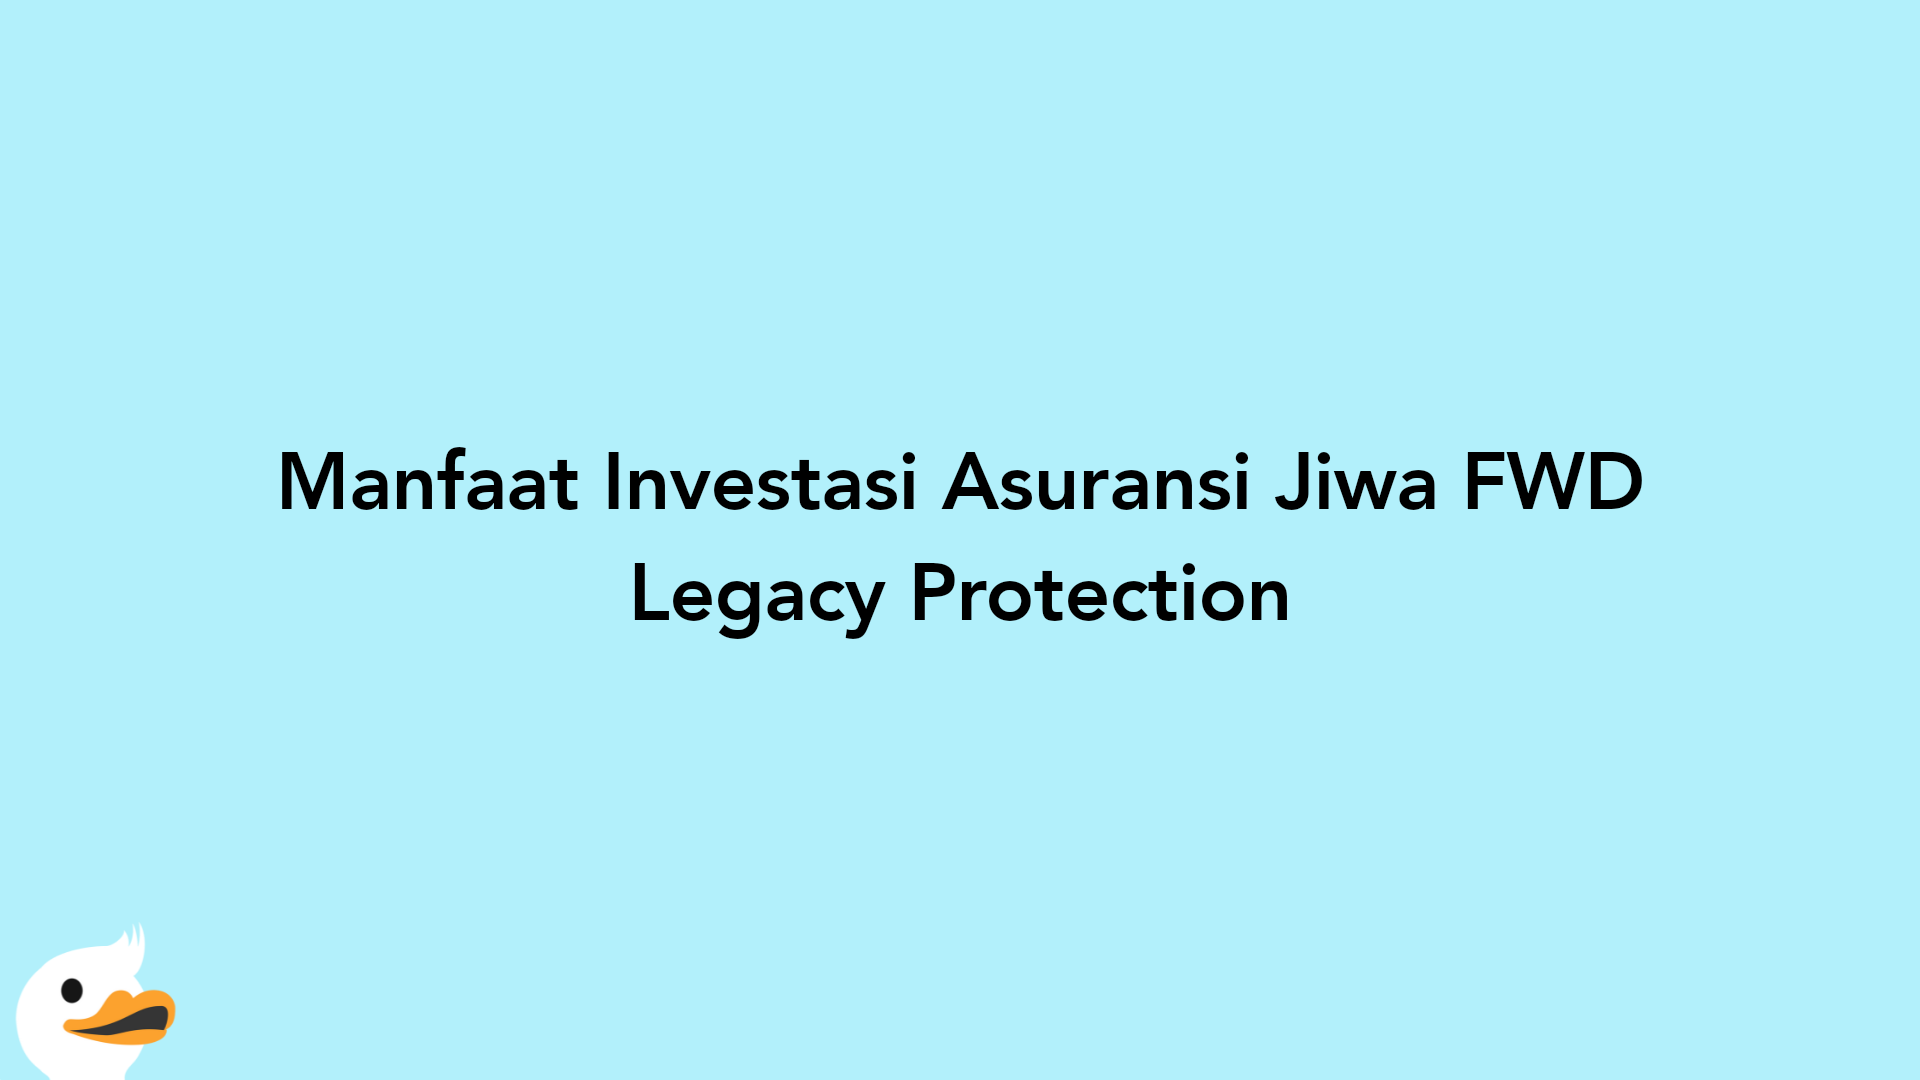 Manfaat Investasi Asuransi Jiwa FWD Legacy Protection